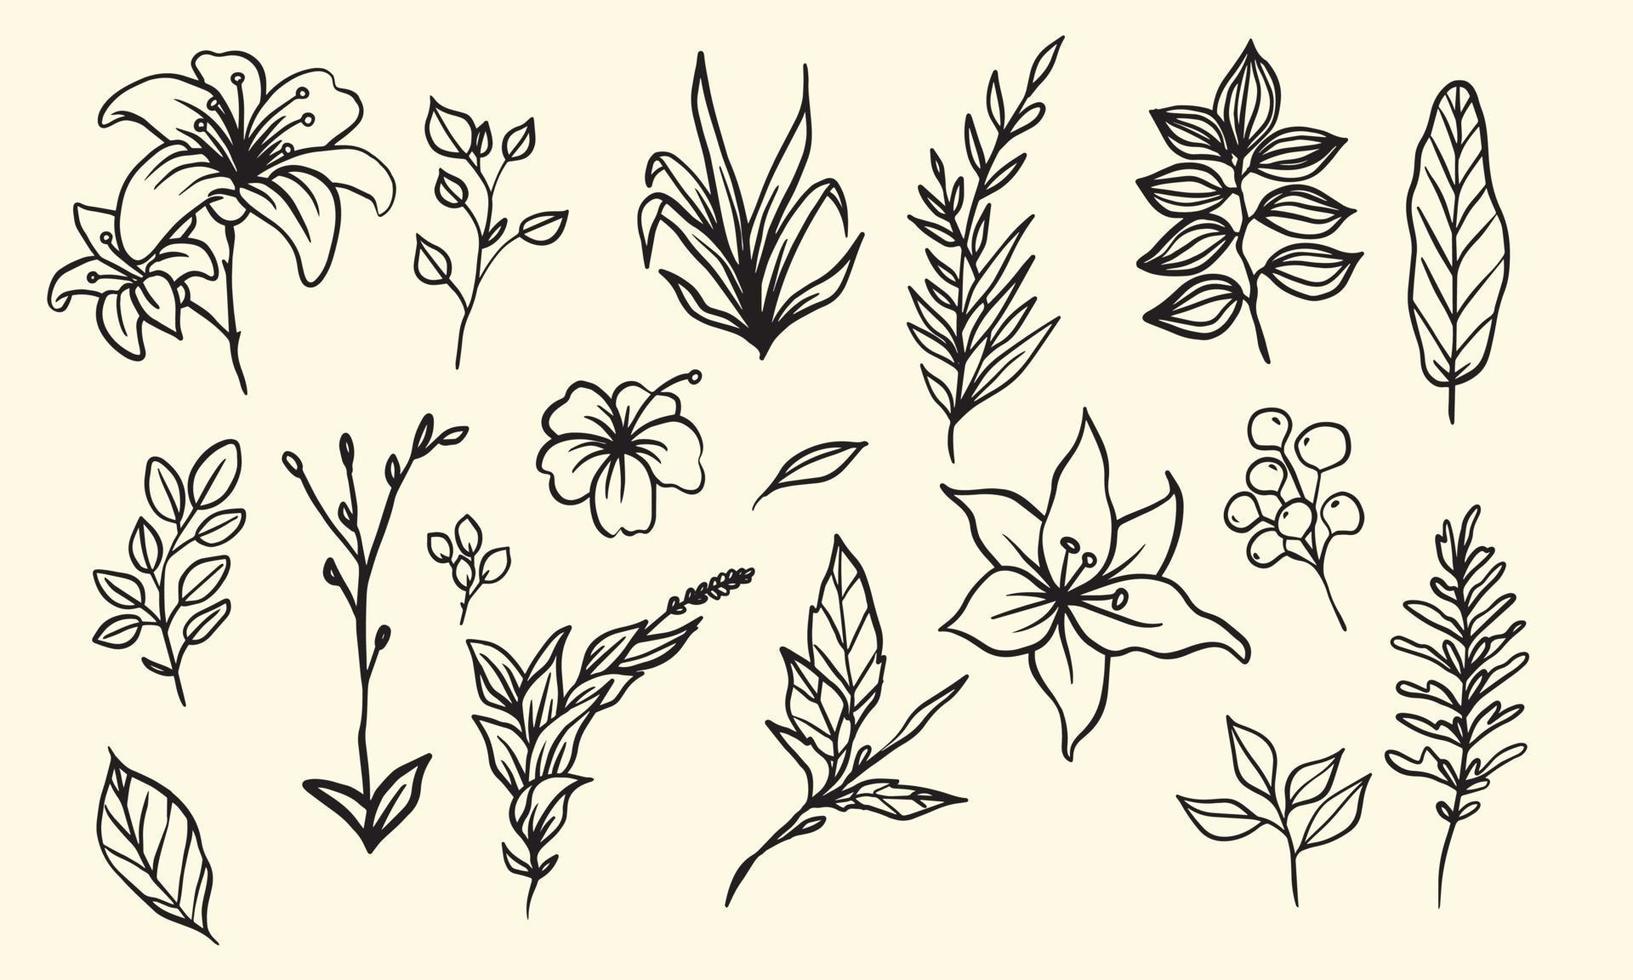 plant- en bloemsamenstelling voor decoratieframe, eenvoudige handgetekende bladeren lineart illustratie, bloemen vectorelementen voor romantisch en vintage design vector